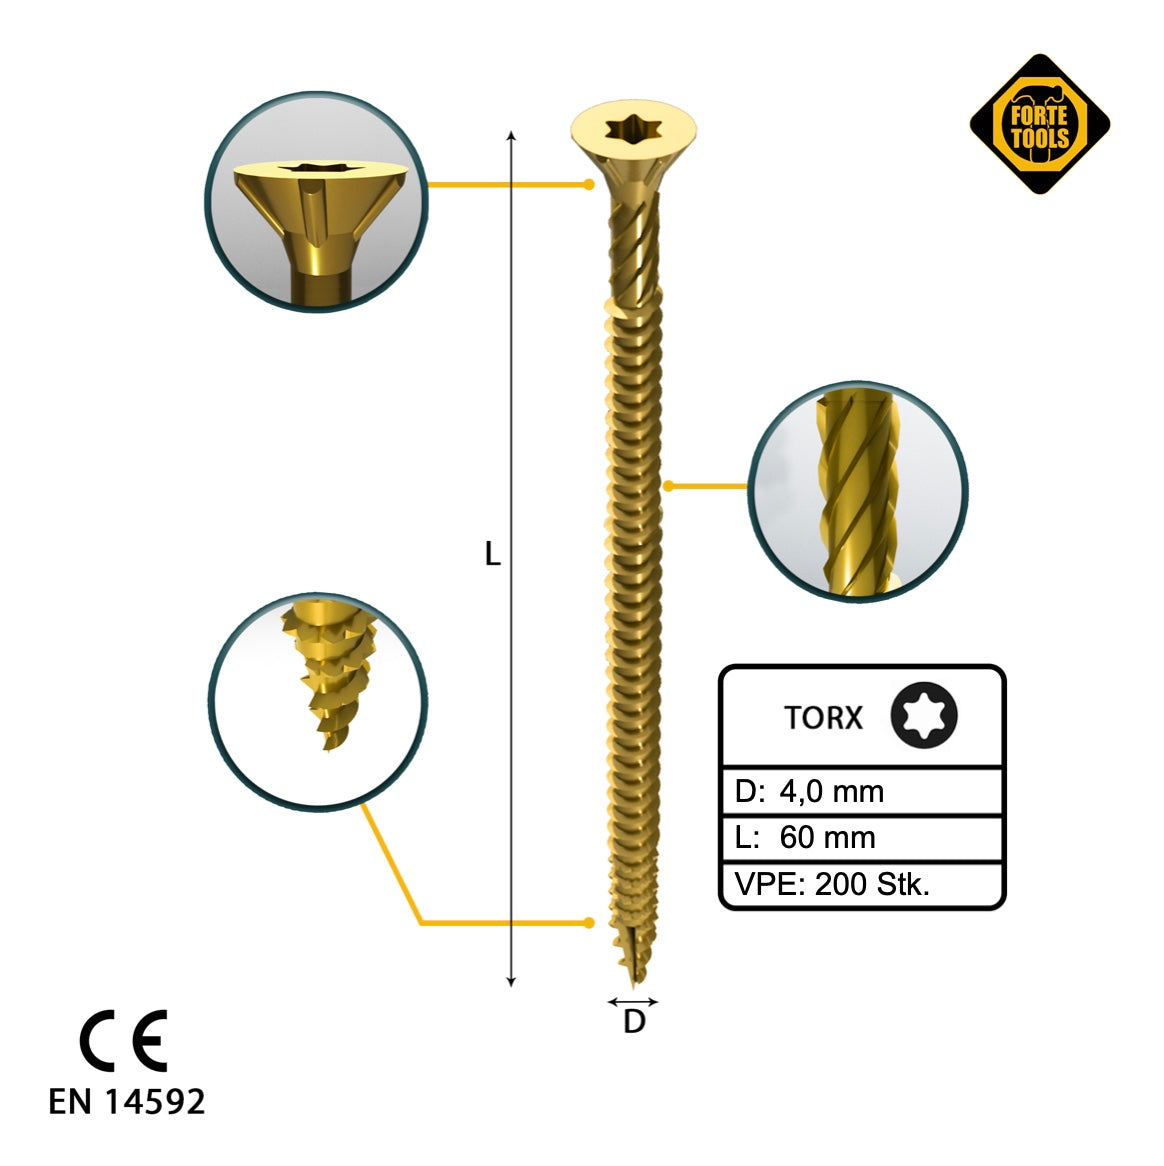 FORTE Tools Universal Holzschraube 4,0 x 60 mm T20 200 Stk. ( 000051399476 ) gelb verzinkt Torx Senkkopf Vollgewinde